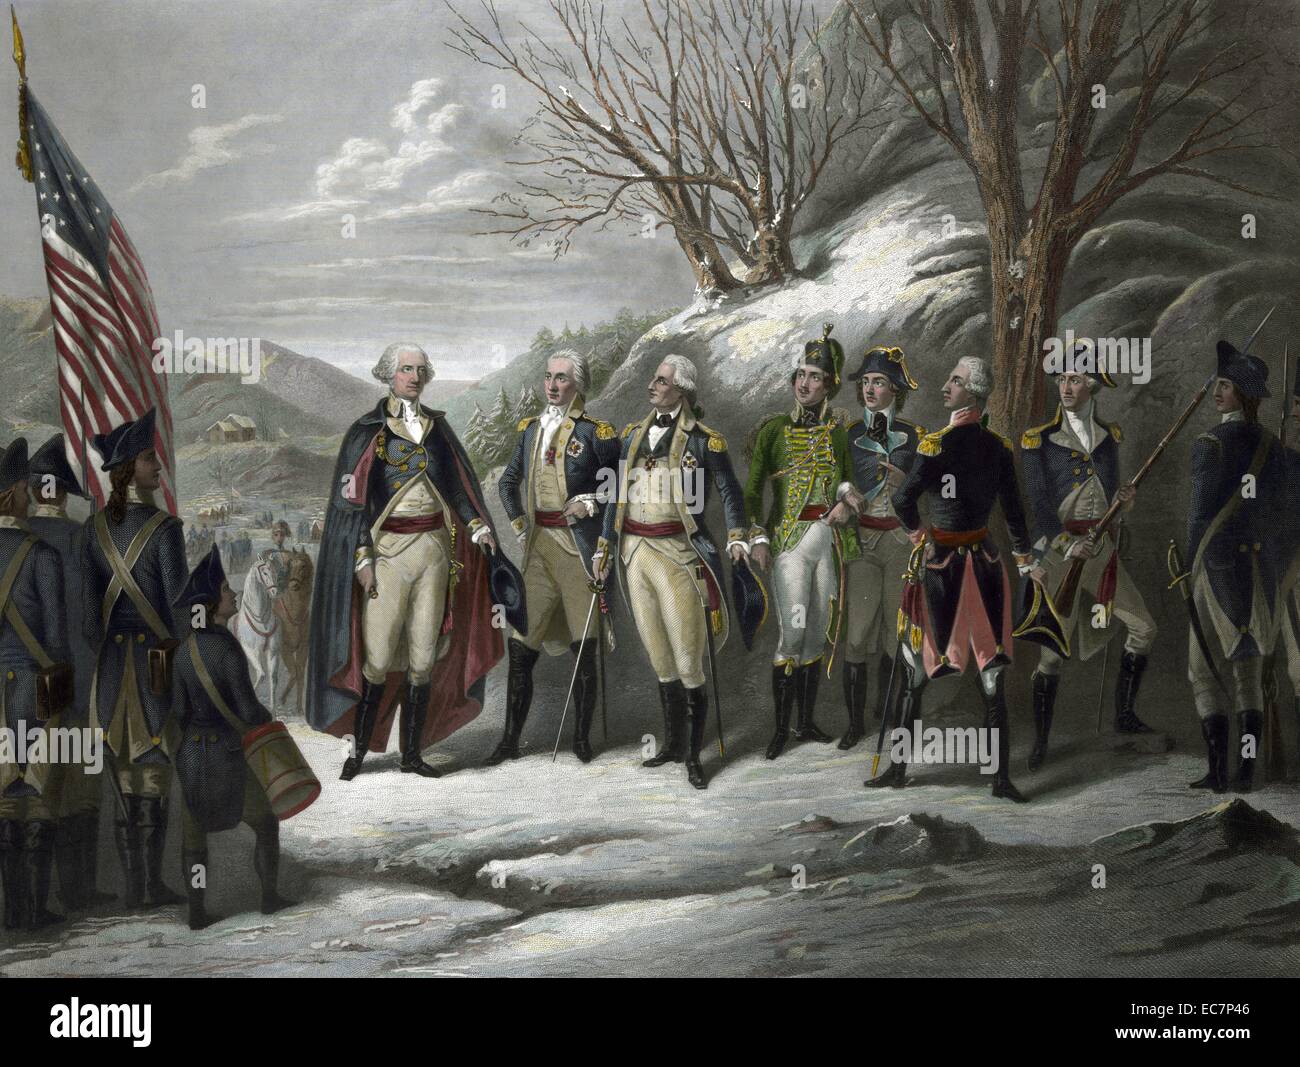 Die Helden der Revolution. General Washington standing with Johann De Kalb, Baron von Steuben, Kazimierz Pulaski, Tadeusz Kosciuszko, Lafayette, John Muhlenberg, and other officers during the Revolutionary War. Stock Photo